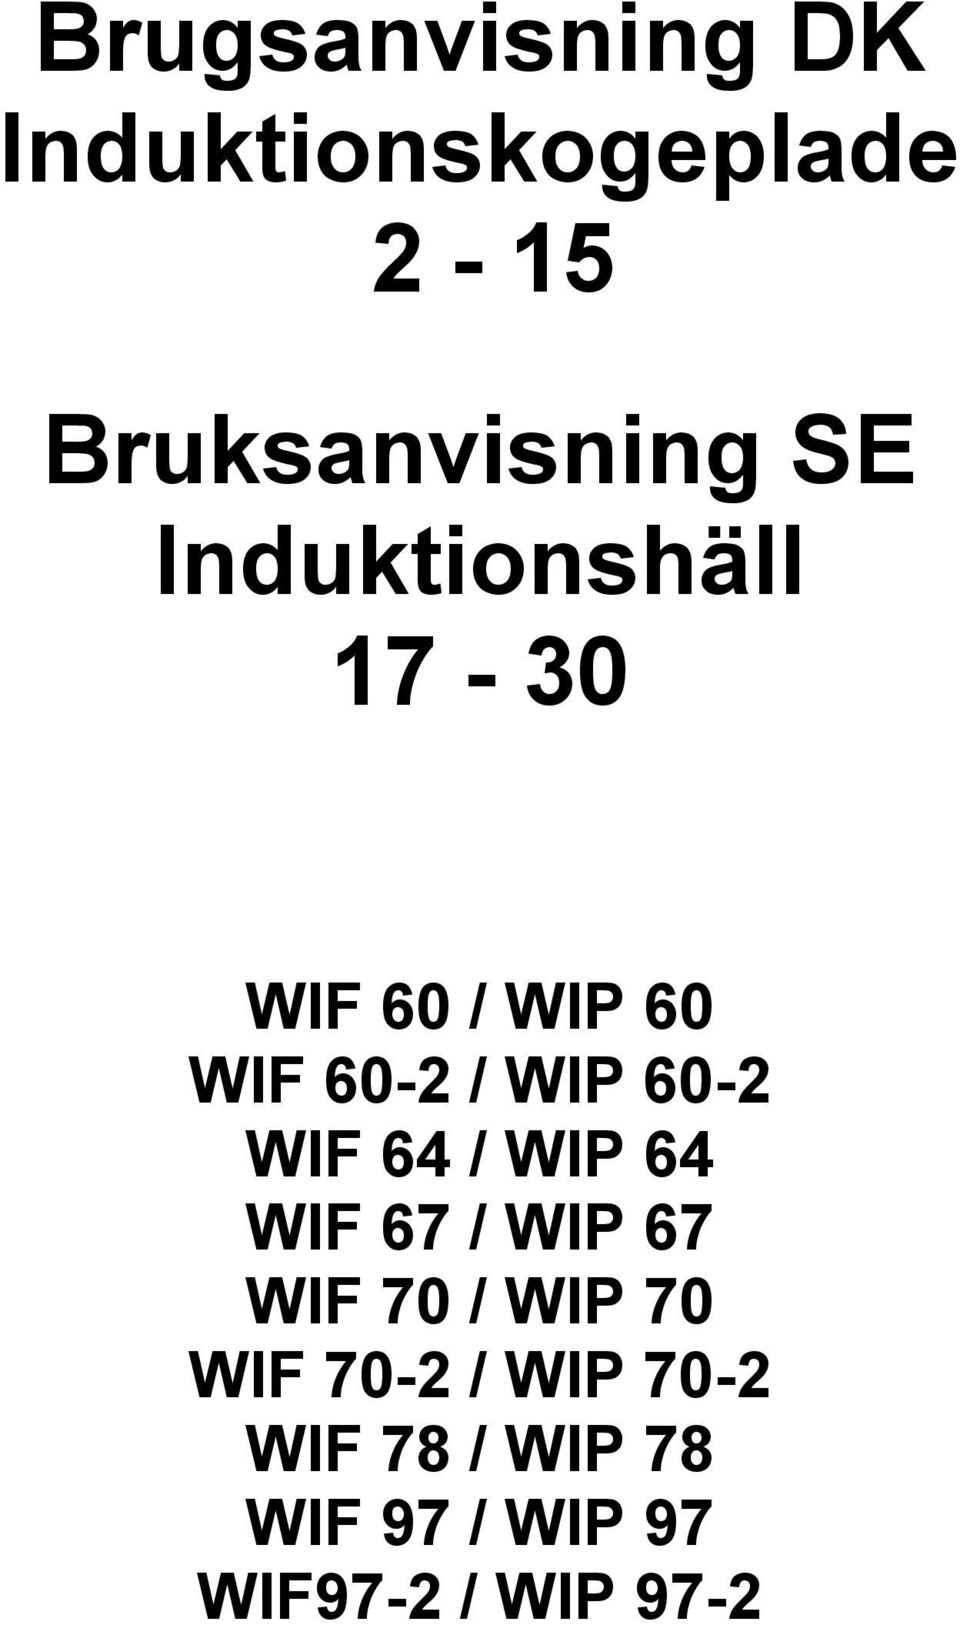 Brugsanvisning DK Induktionskogeplade Bruksanvisning SE Induktionshäll PDF  Gratis download